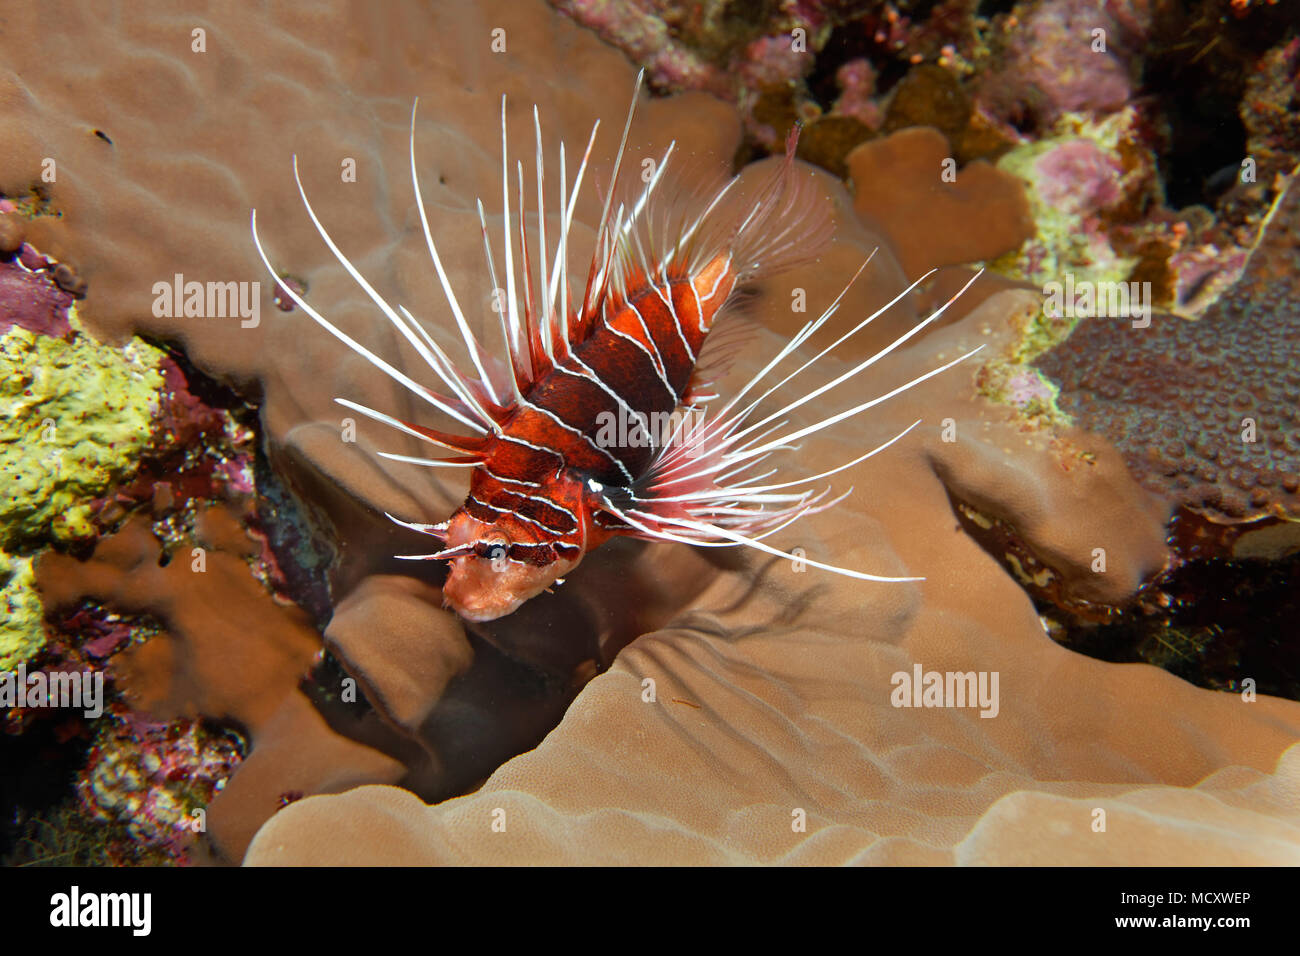 Firefish radiale (Pterois radiata) nella barriera corallina, notturno, Mar Rosso, Egitto Foto Stock